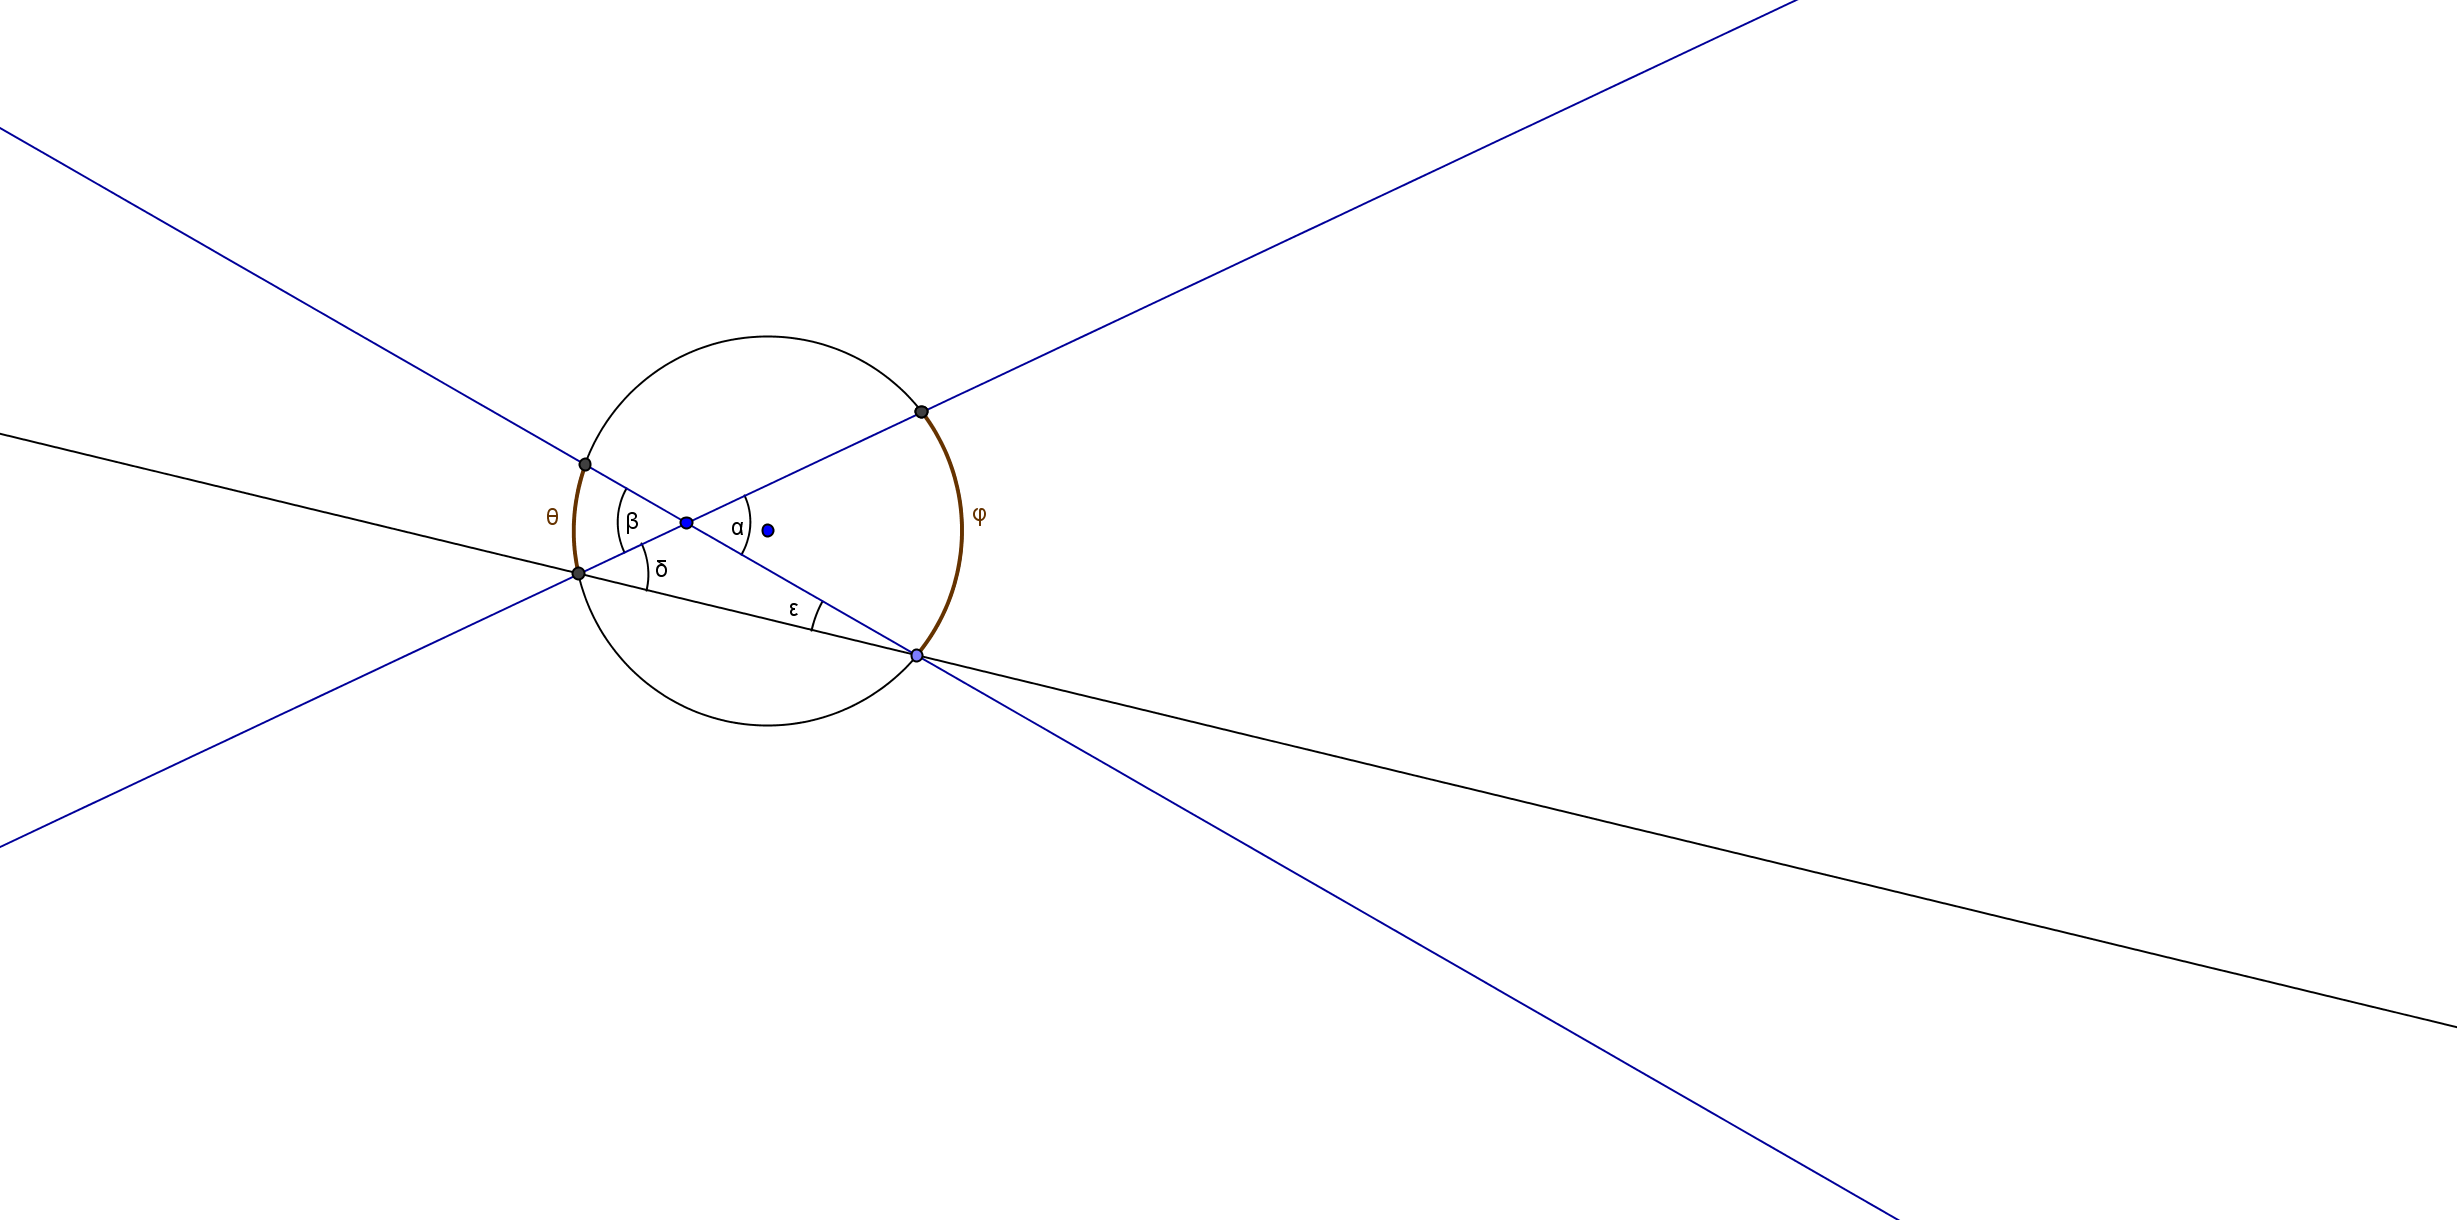 Demostración: La bisectriz del ángulo β (ángulo central del arco que subtiende α) es mediatriz del segmento VD y por tanto ϕ es recto, lo que implica que δ+β/2=π/2=90º.